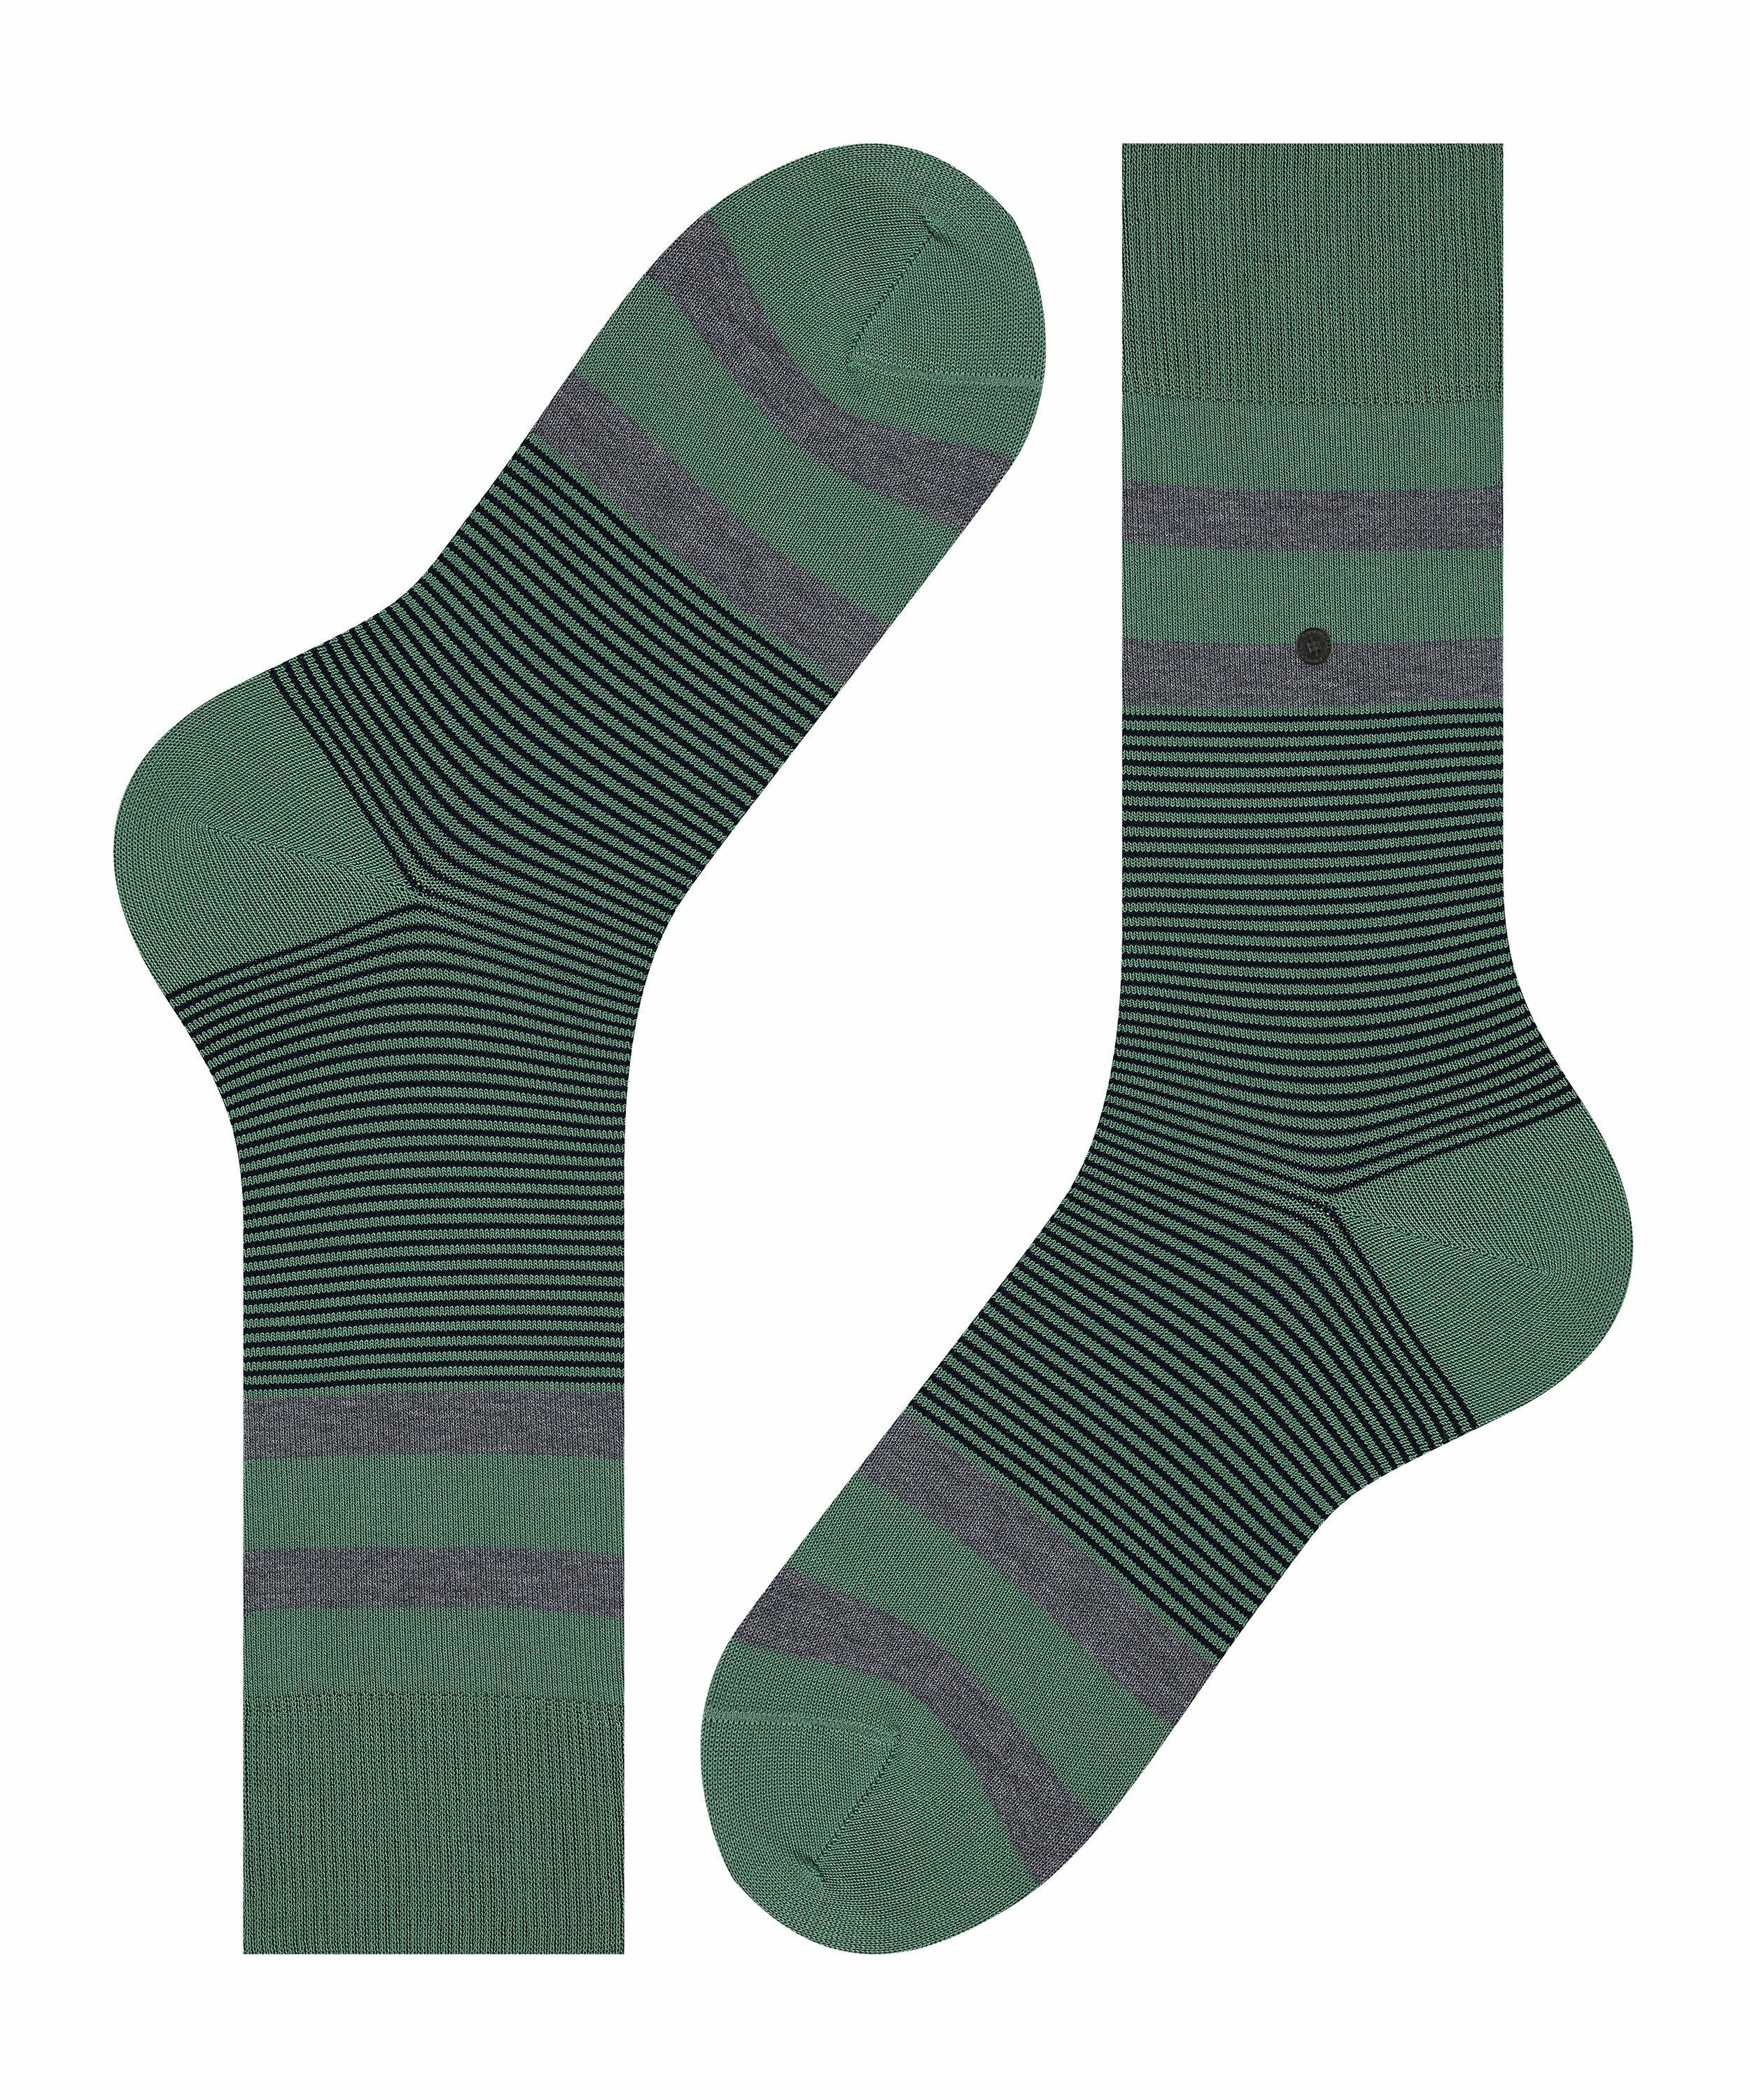 Burlington Black Stripe Herren Socken, 40-46, Grün, Streifen, Baumwolle, 21 günstig online kaufen